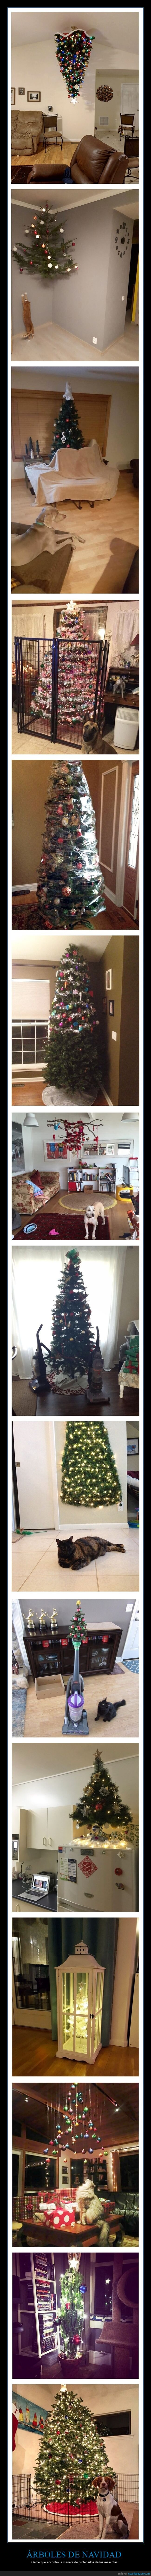 árboles de navidad,proteger,mascotas